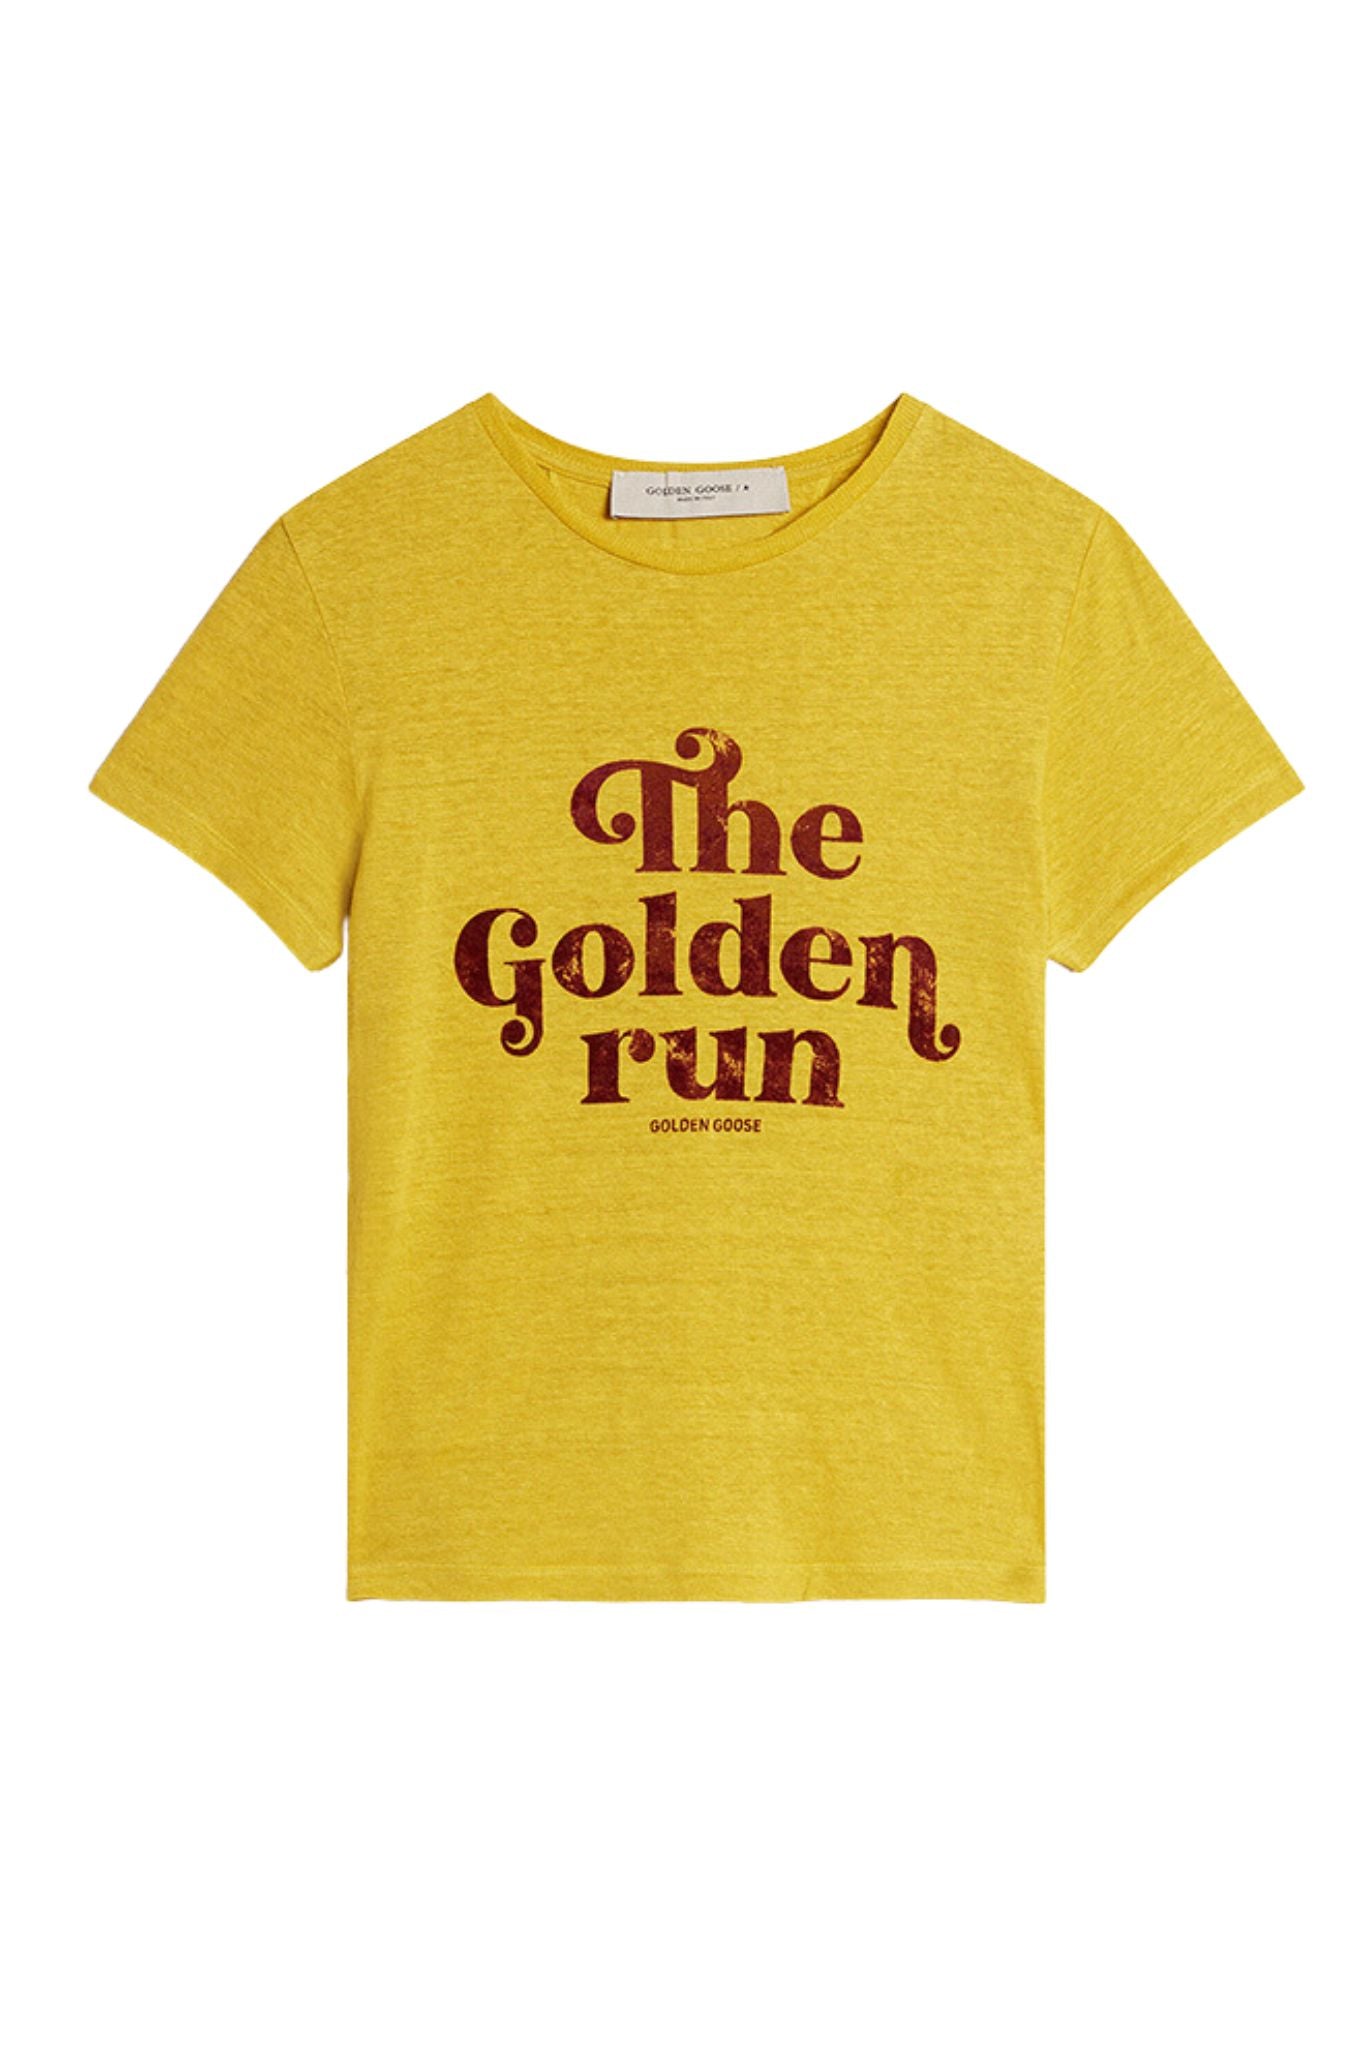 Golden Goose The Golden Run T-Shirt